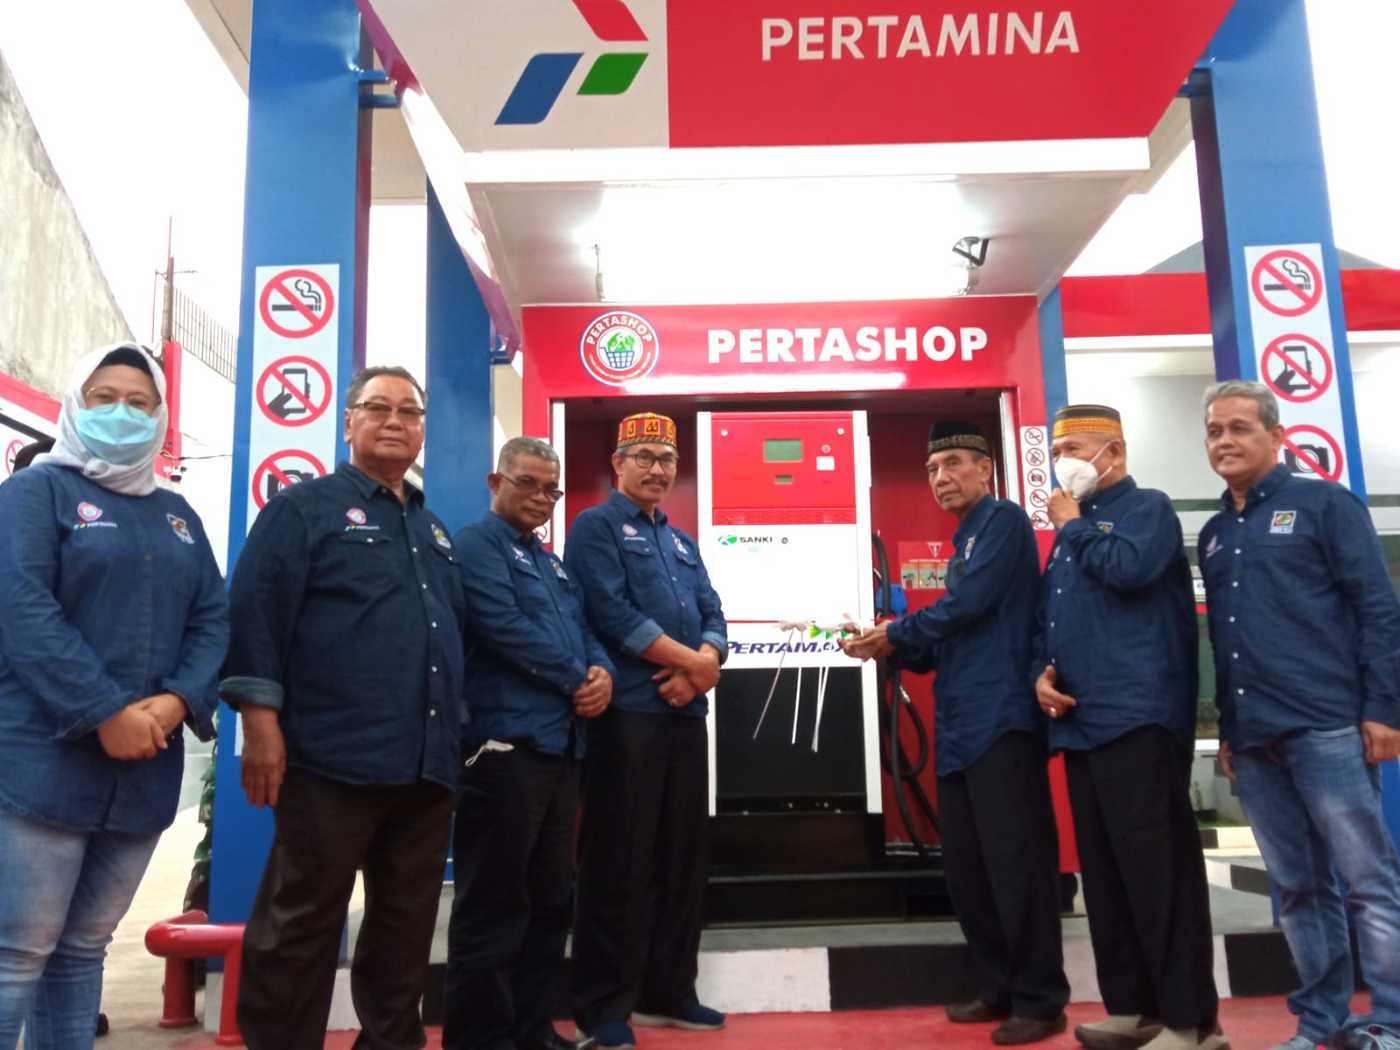 IKPRI Launching Bisnis Pertashop di Depok